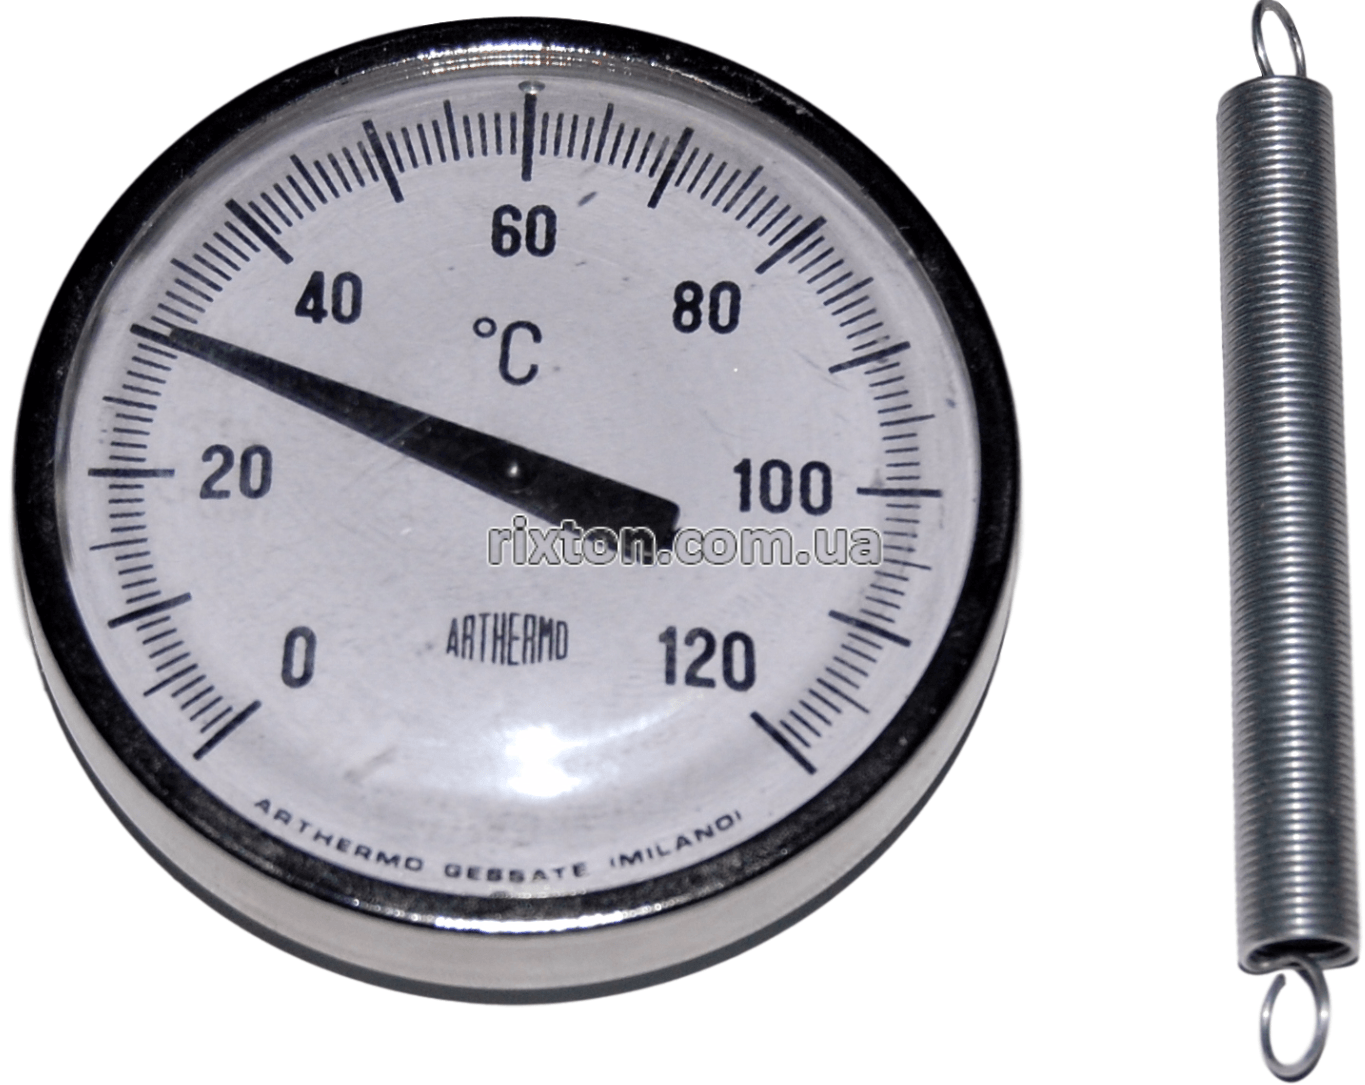 Термометр биметаллический накладной Arthermo AR-TUB 63 (Ø63 мм, 0-120°С) с пружинкой